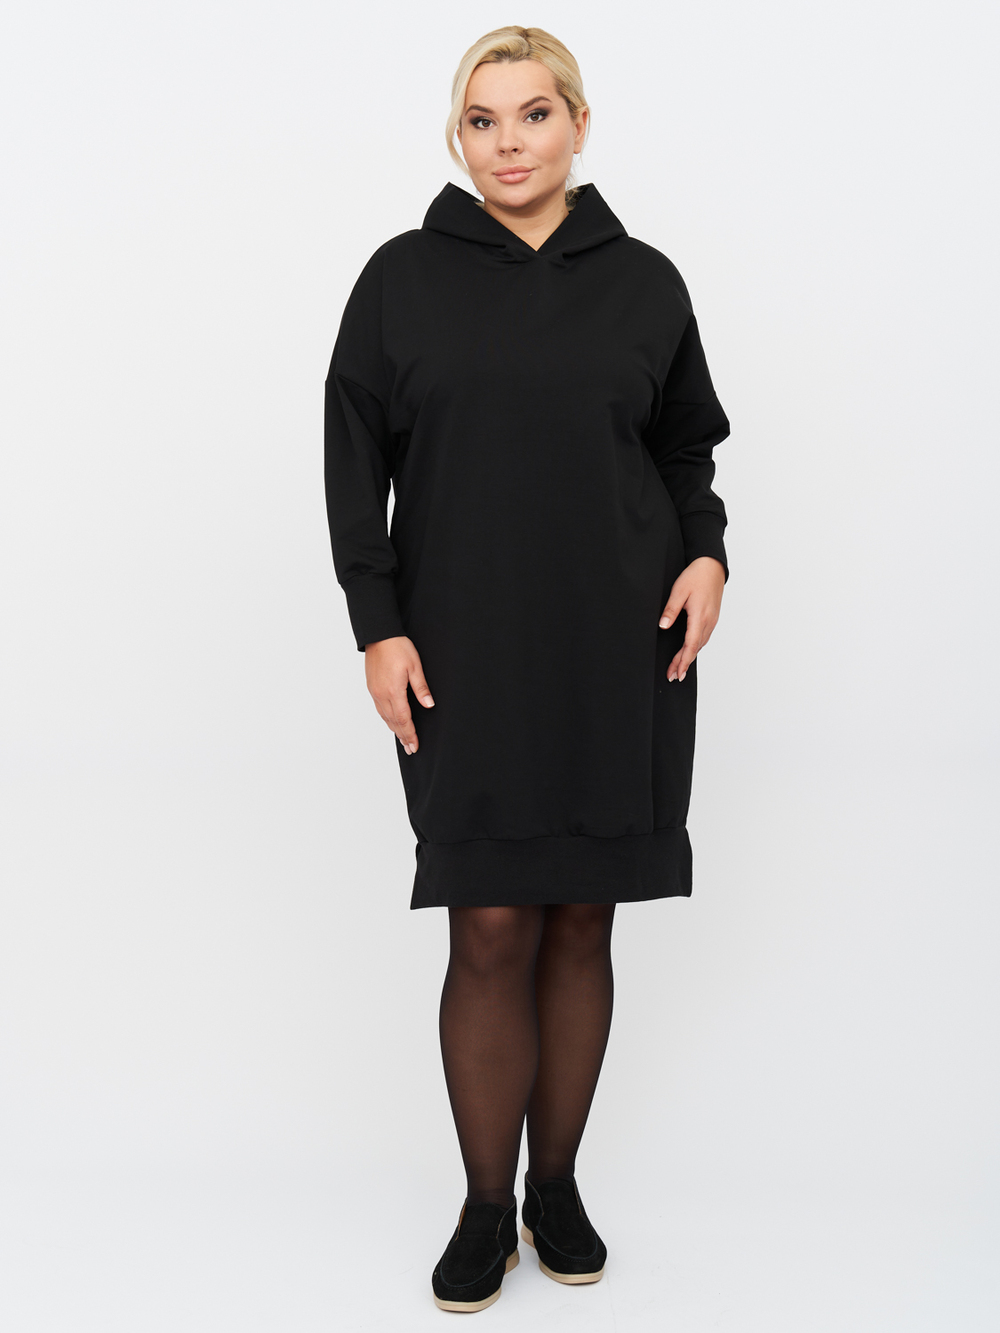 Платье женское ZORY ZPP83102BLK01 черное 56-58 RU